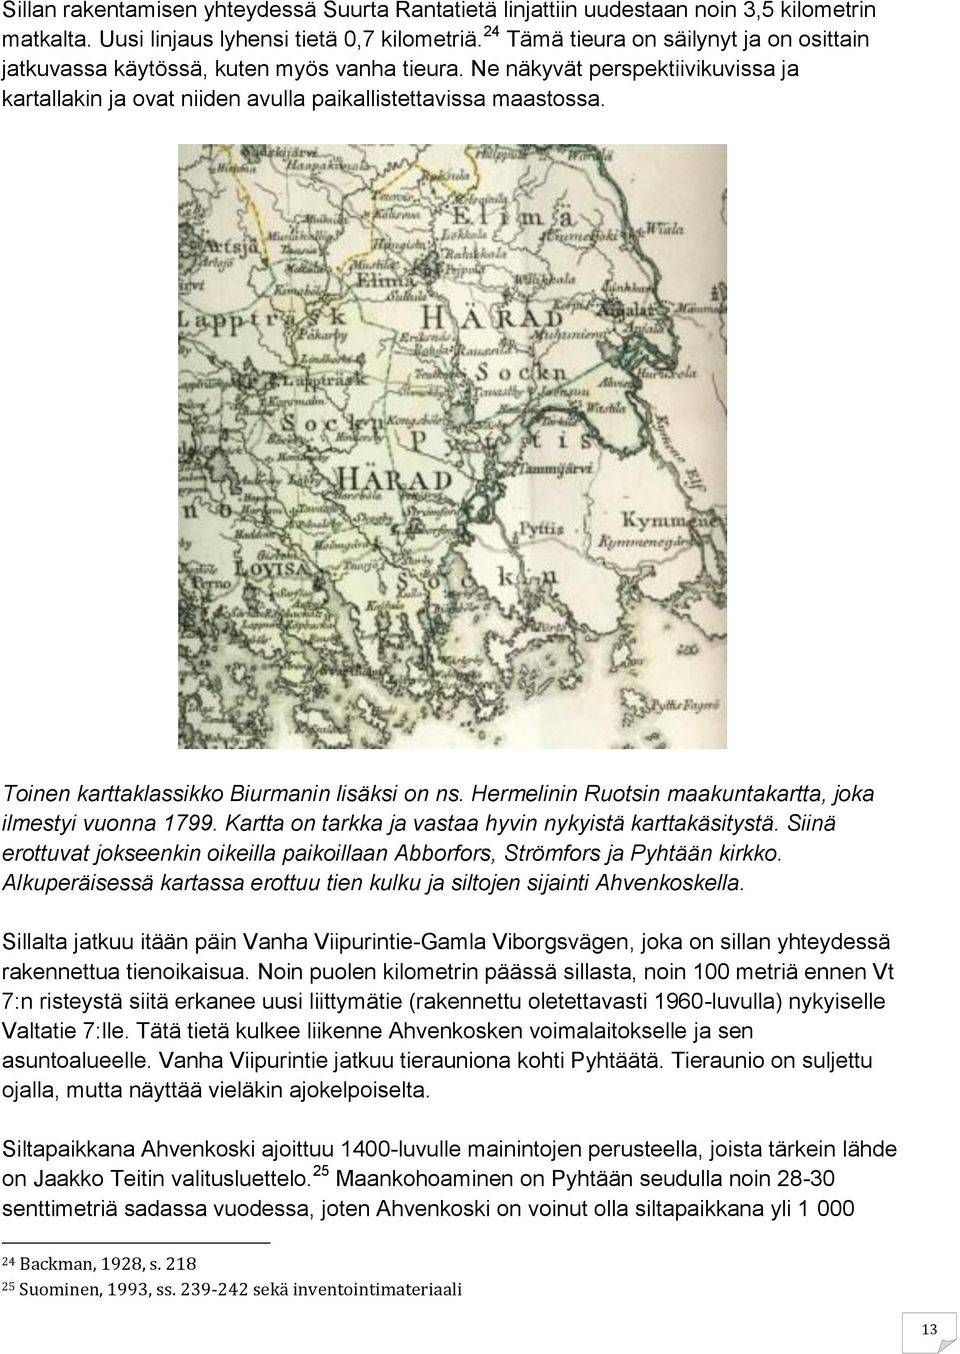 Toinen karttaklassikko Biurmanin lisäksi on ns. Hermelinin Ruotsin maakuntakartta, joka ilmestyi vuonna 1799. Kartta on tarkka ja vastaa hyvin nykyistä karttakäsitystä.